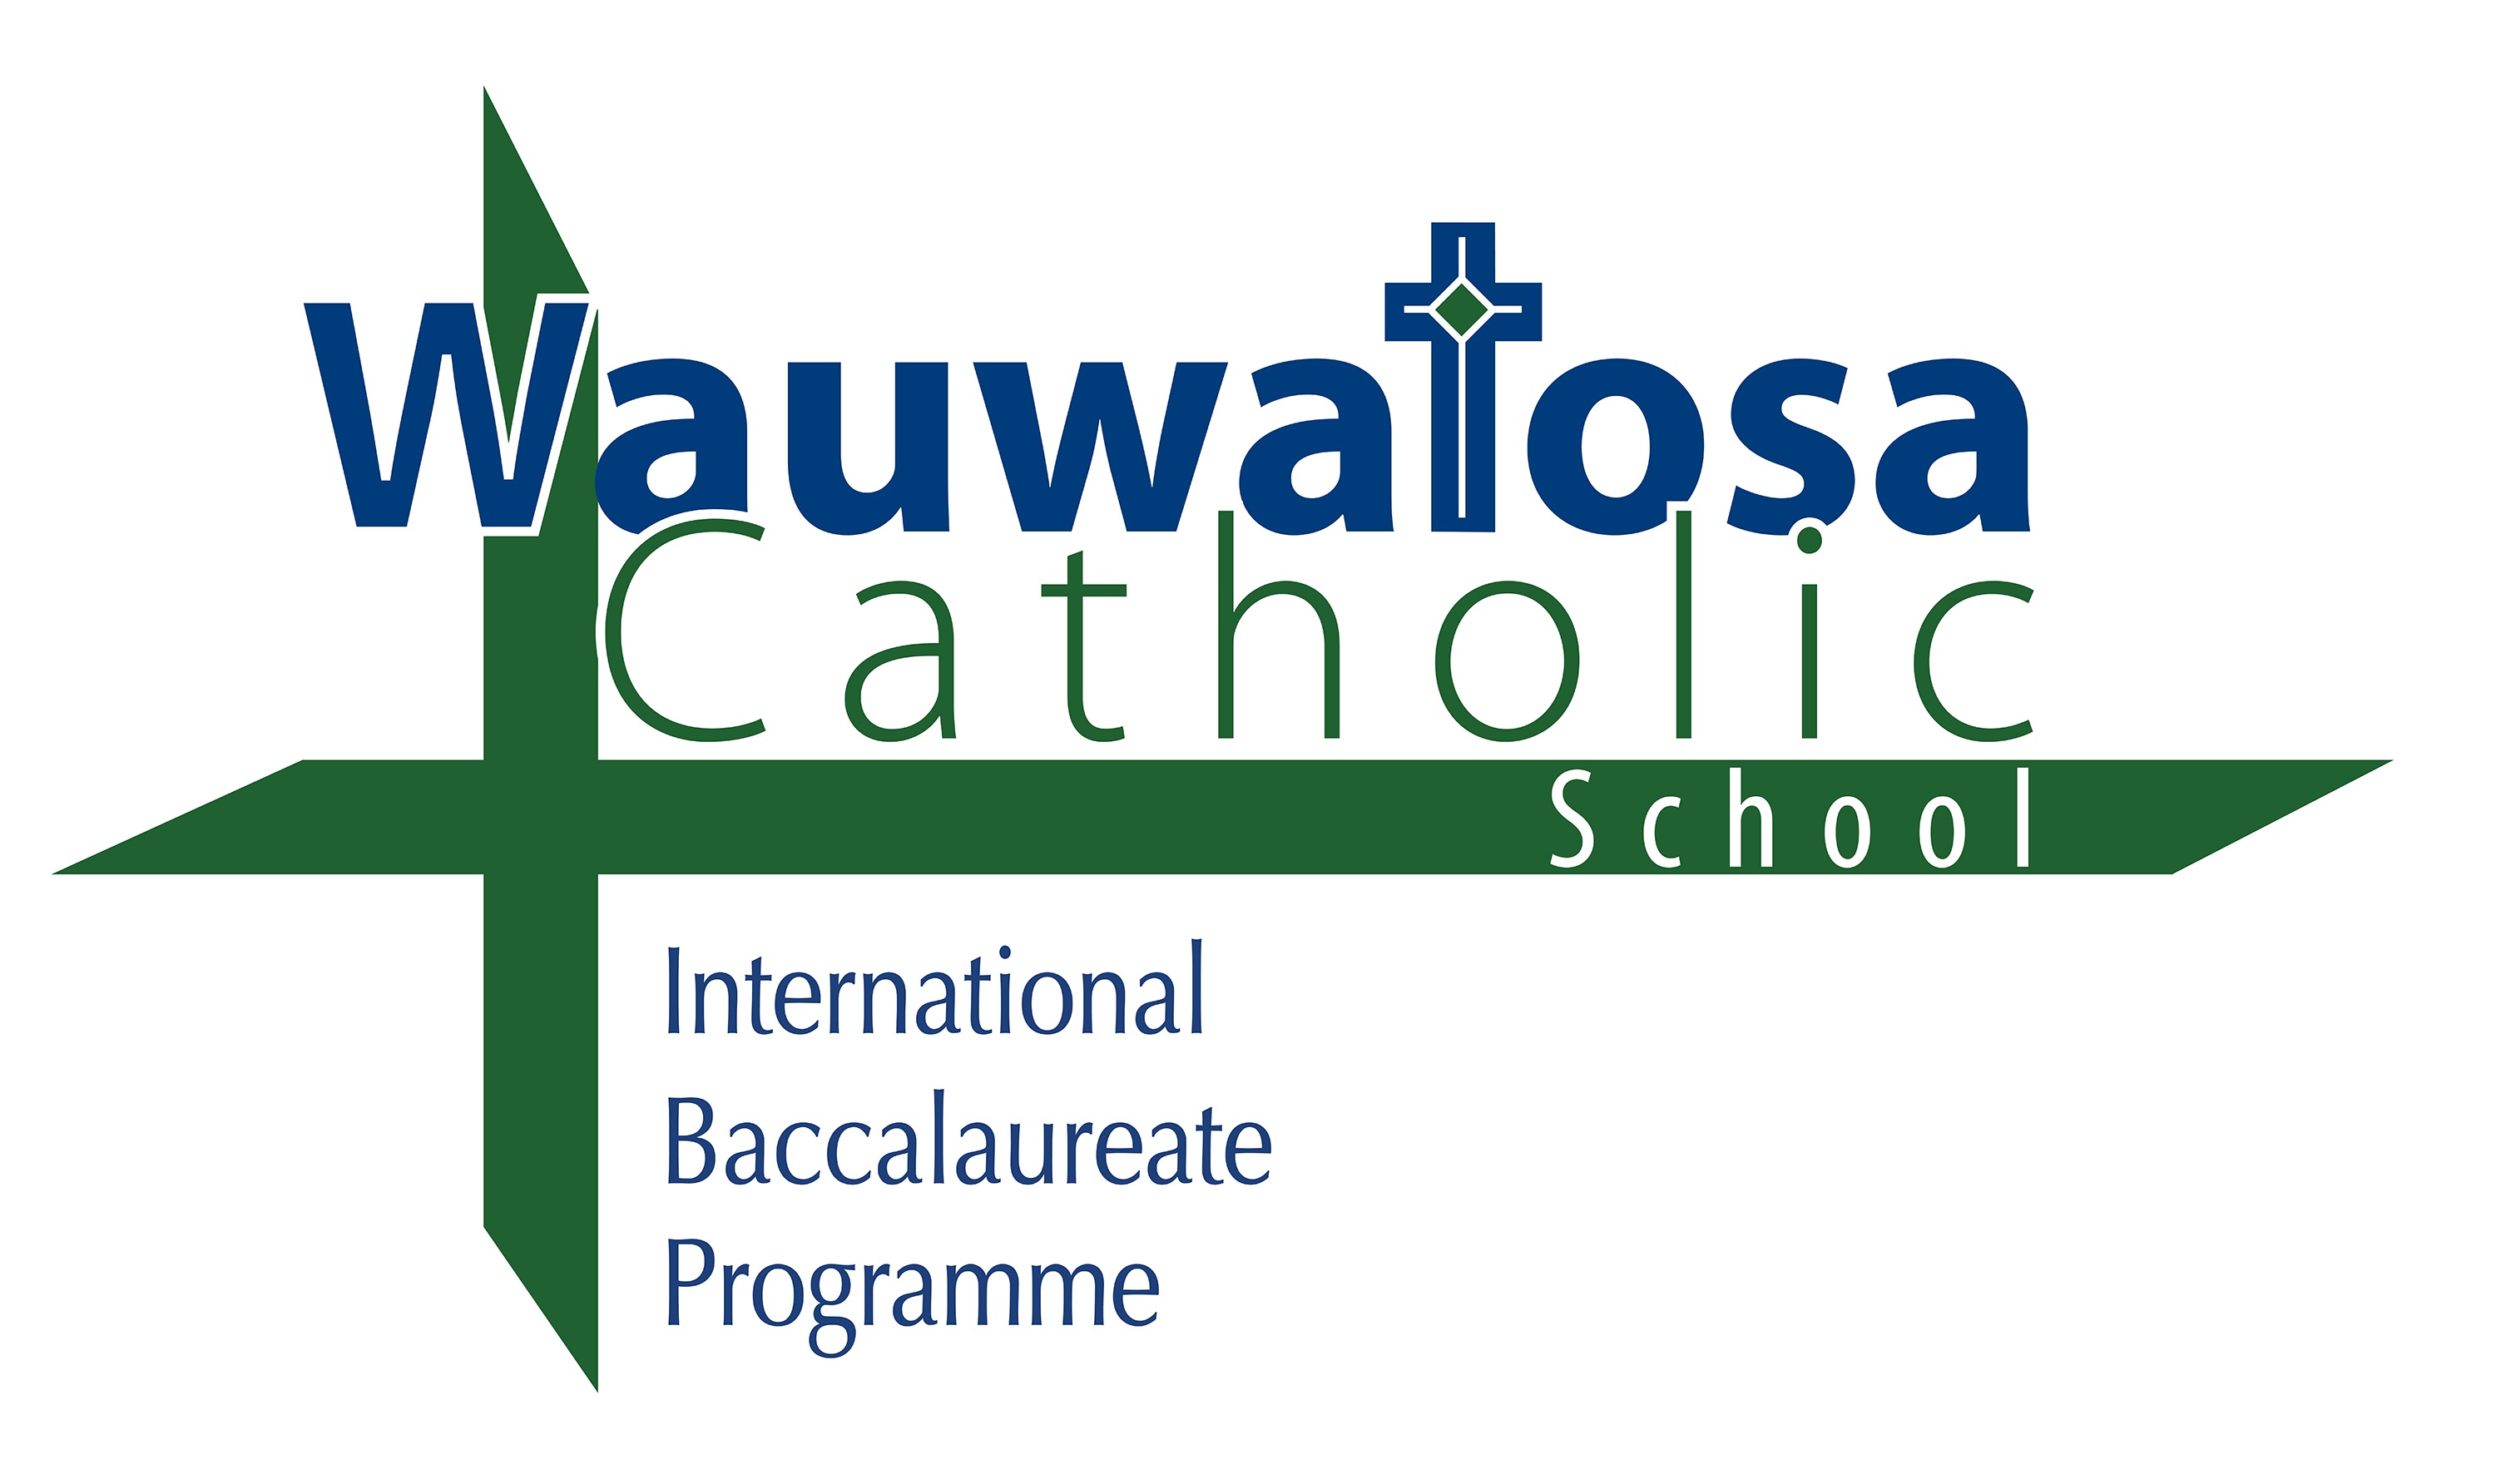 Wauwatosa Catholic